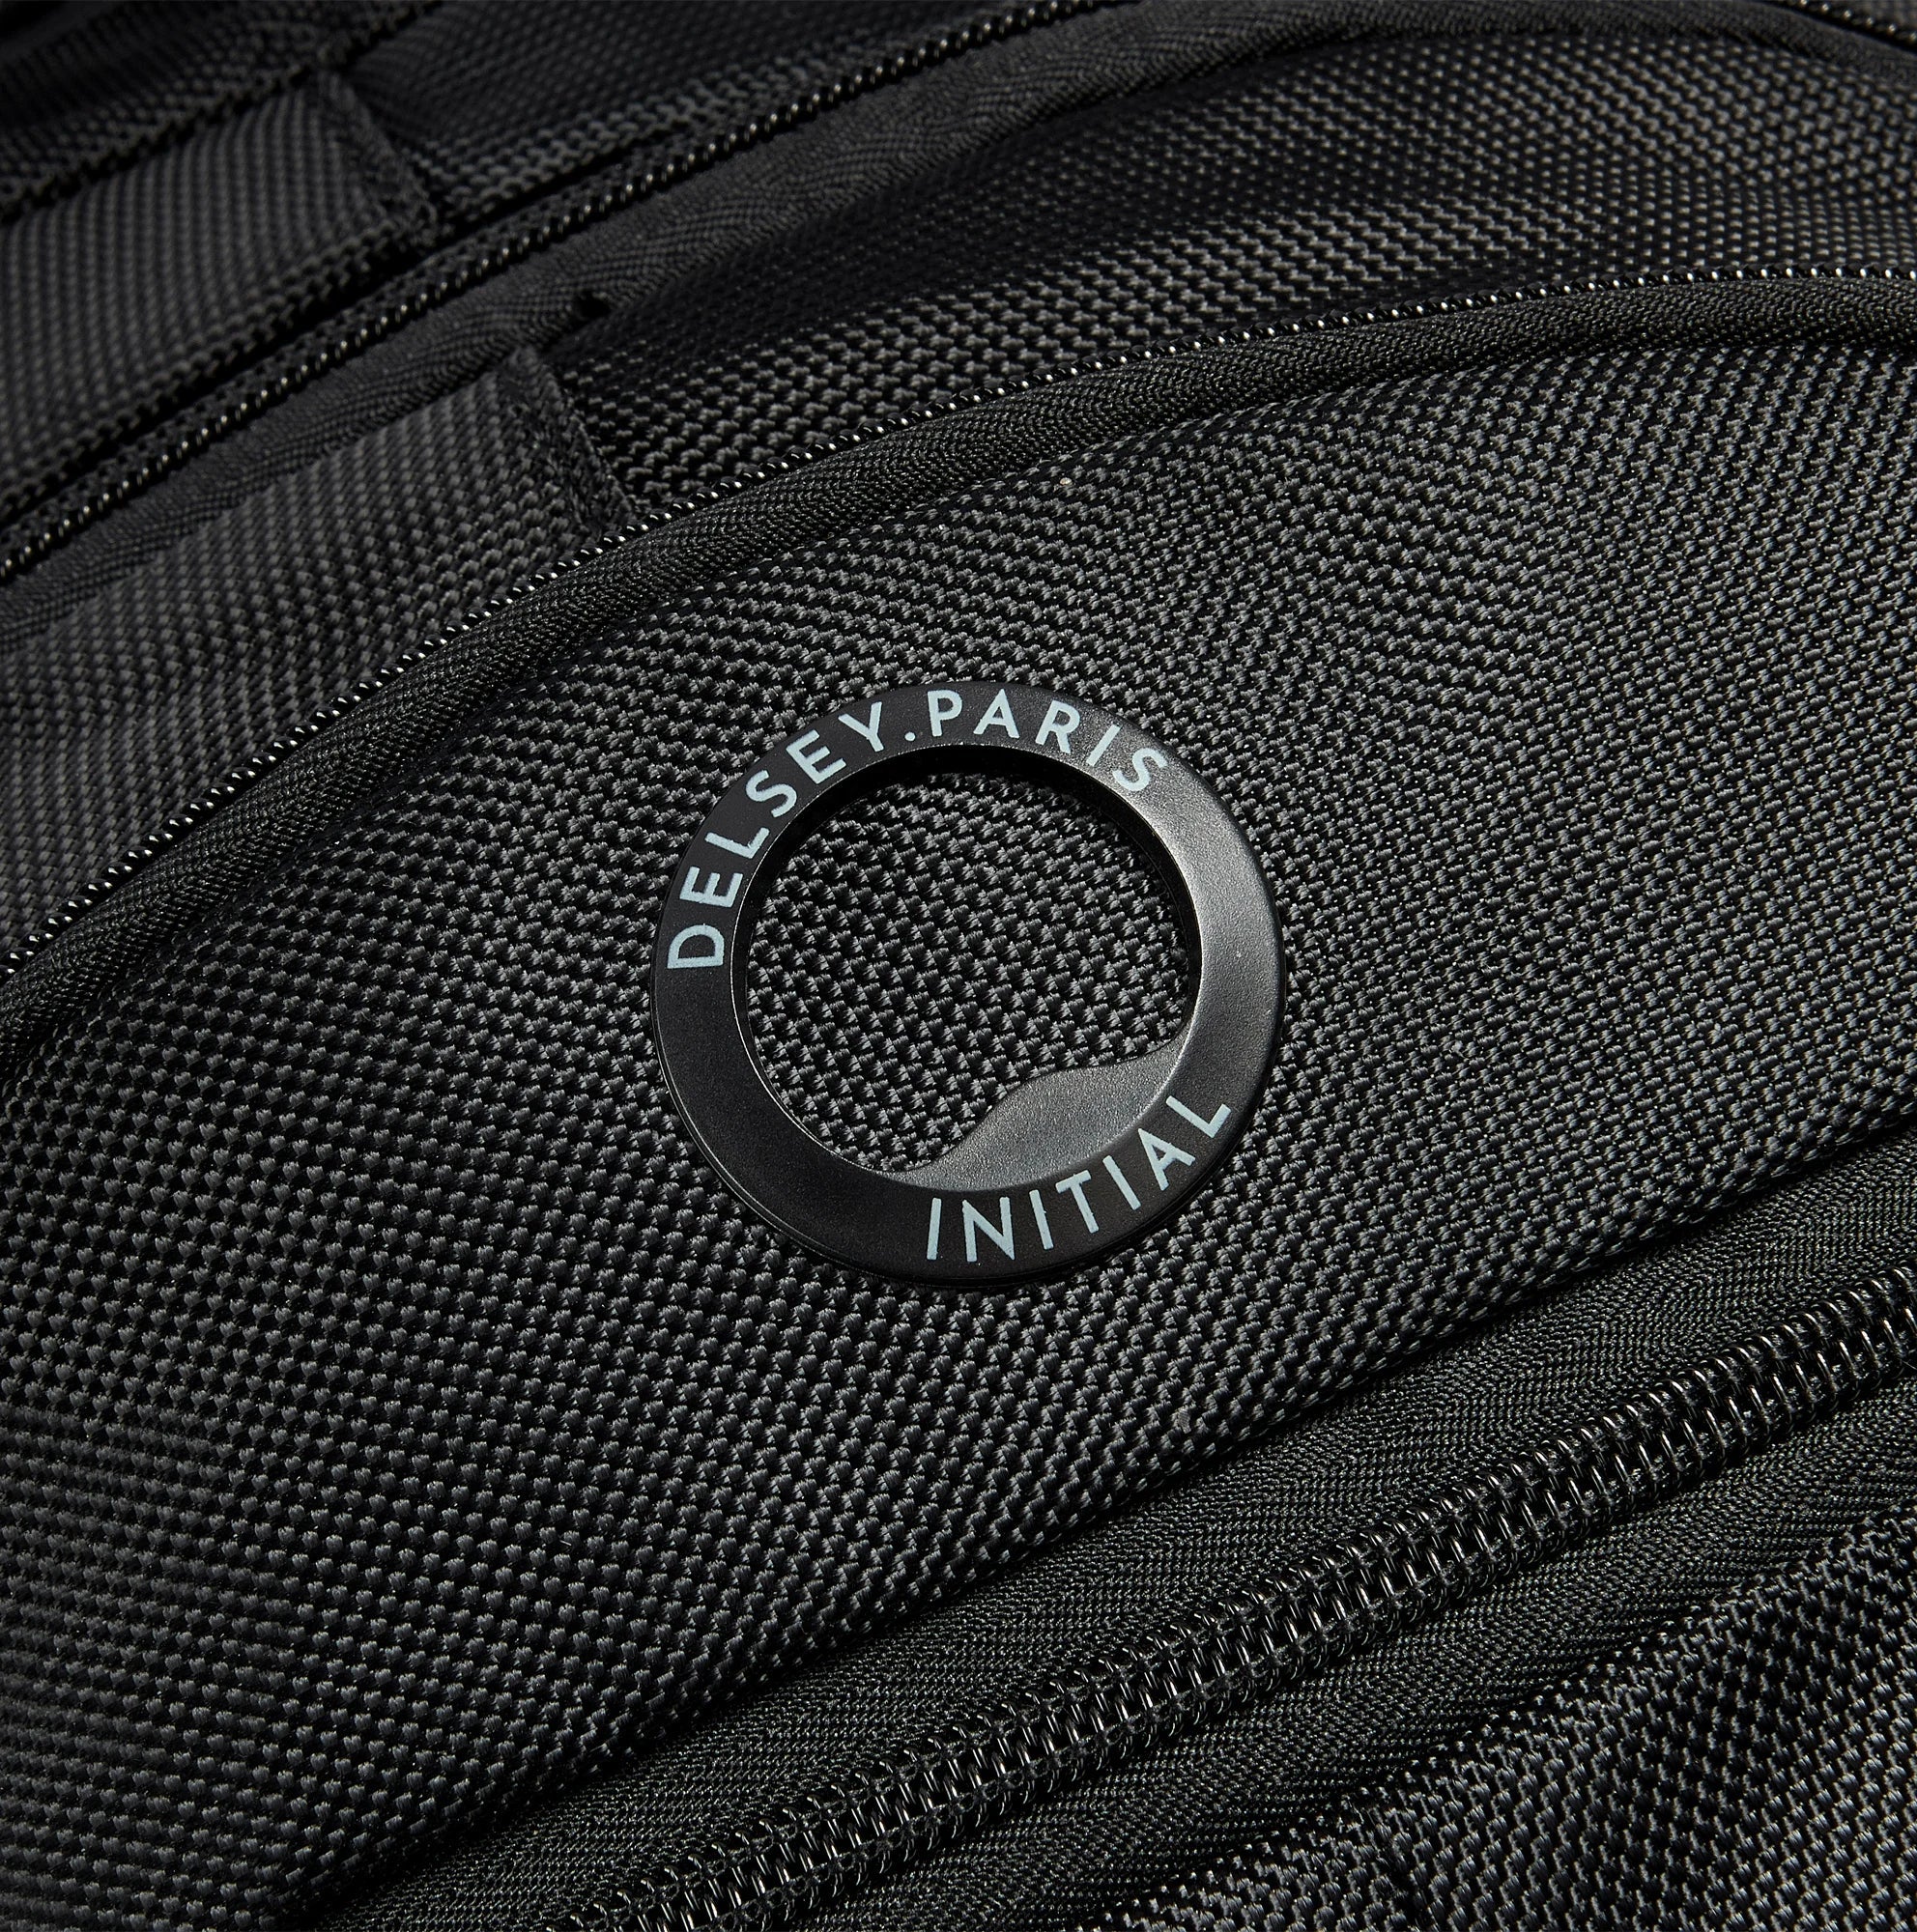 Delsey Element Backpacks Flier Backpack 45 cm - Black